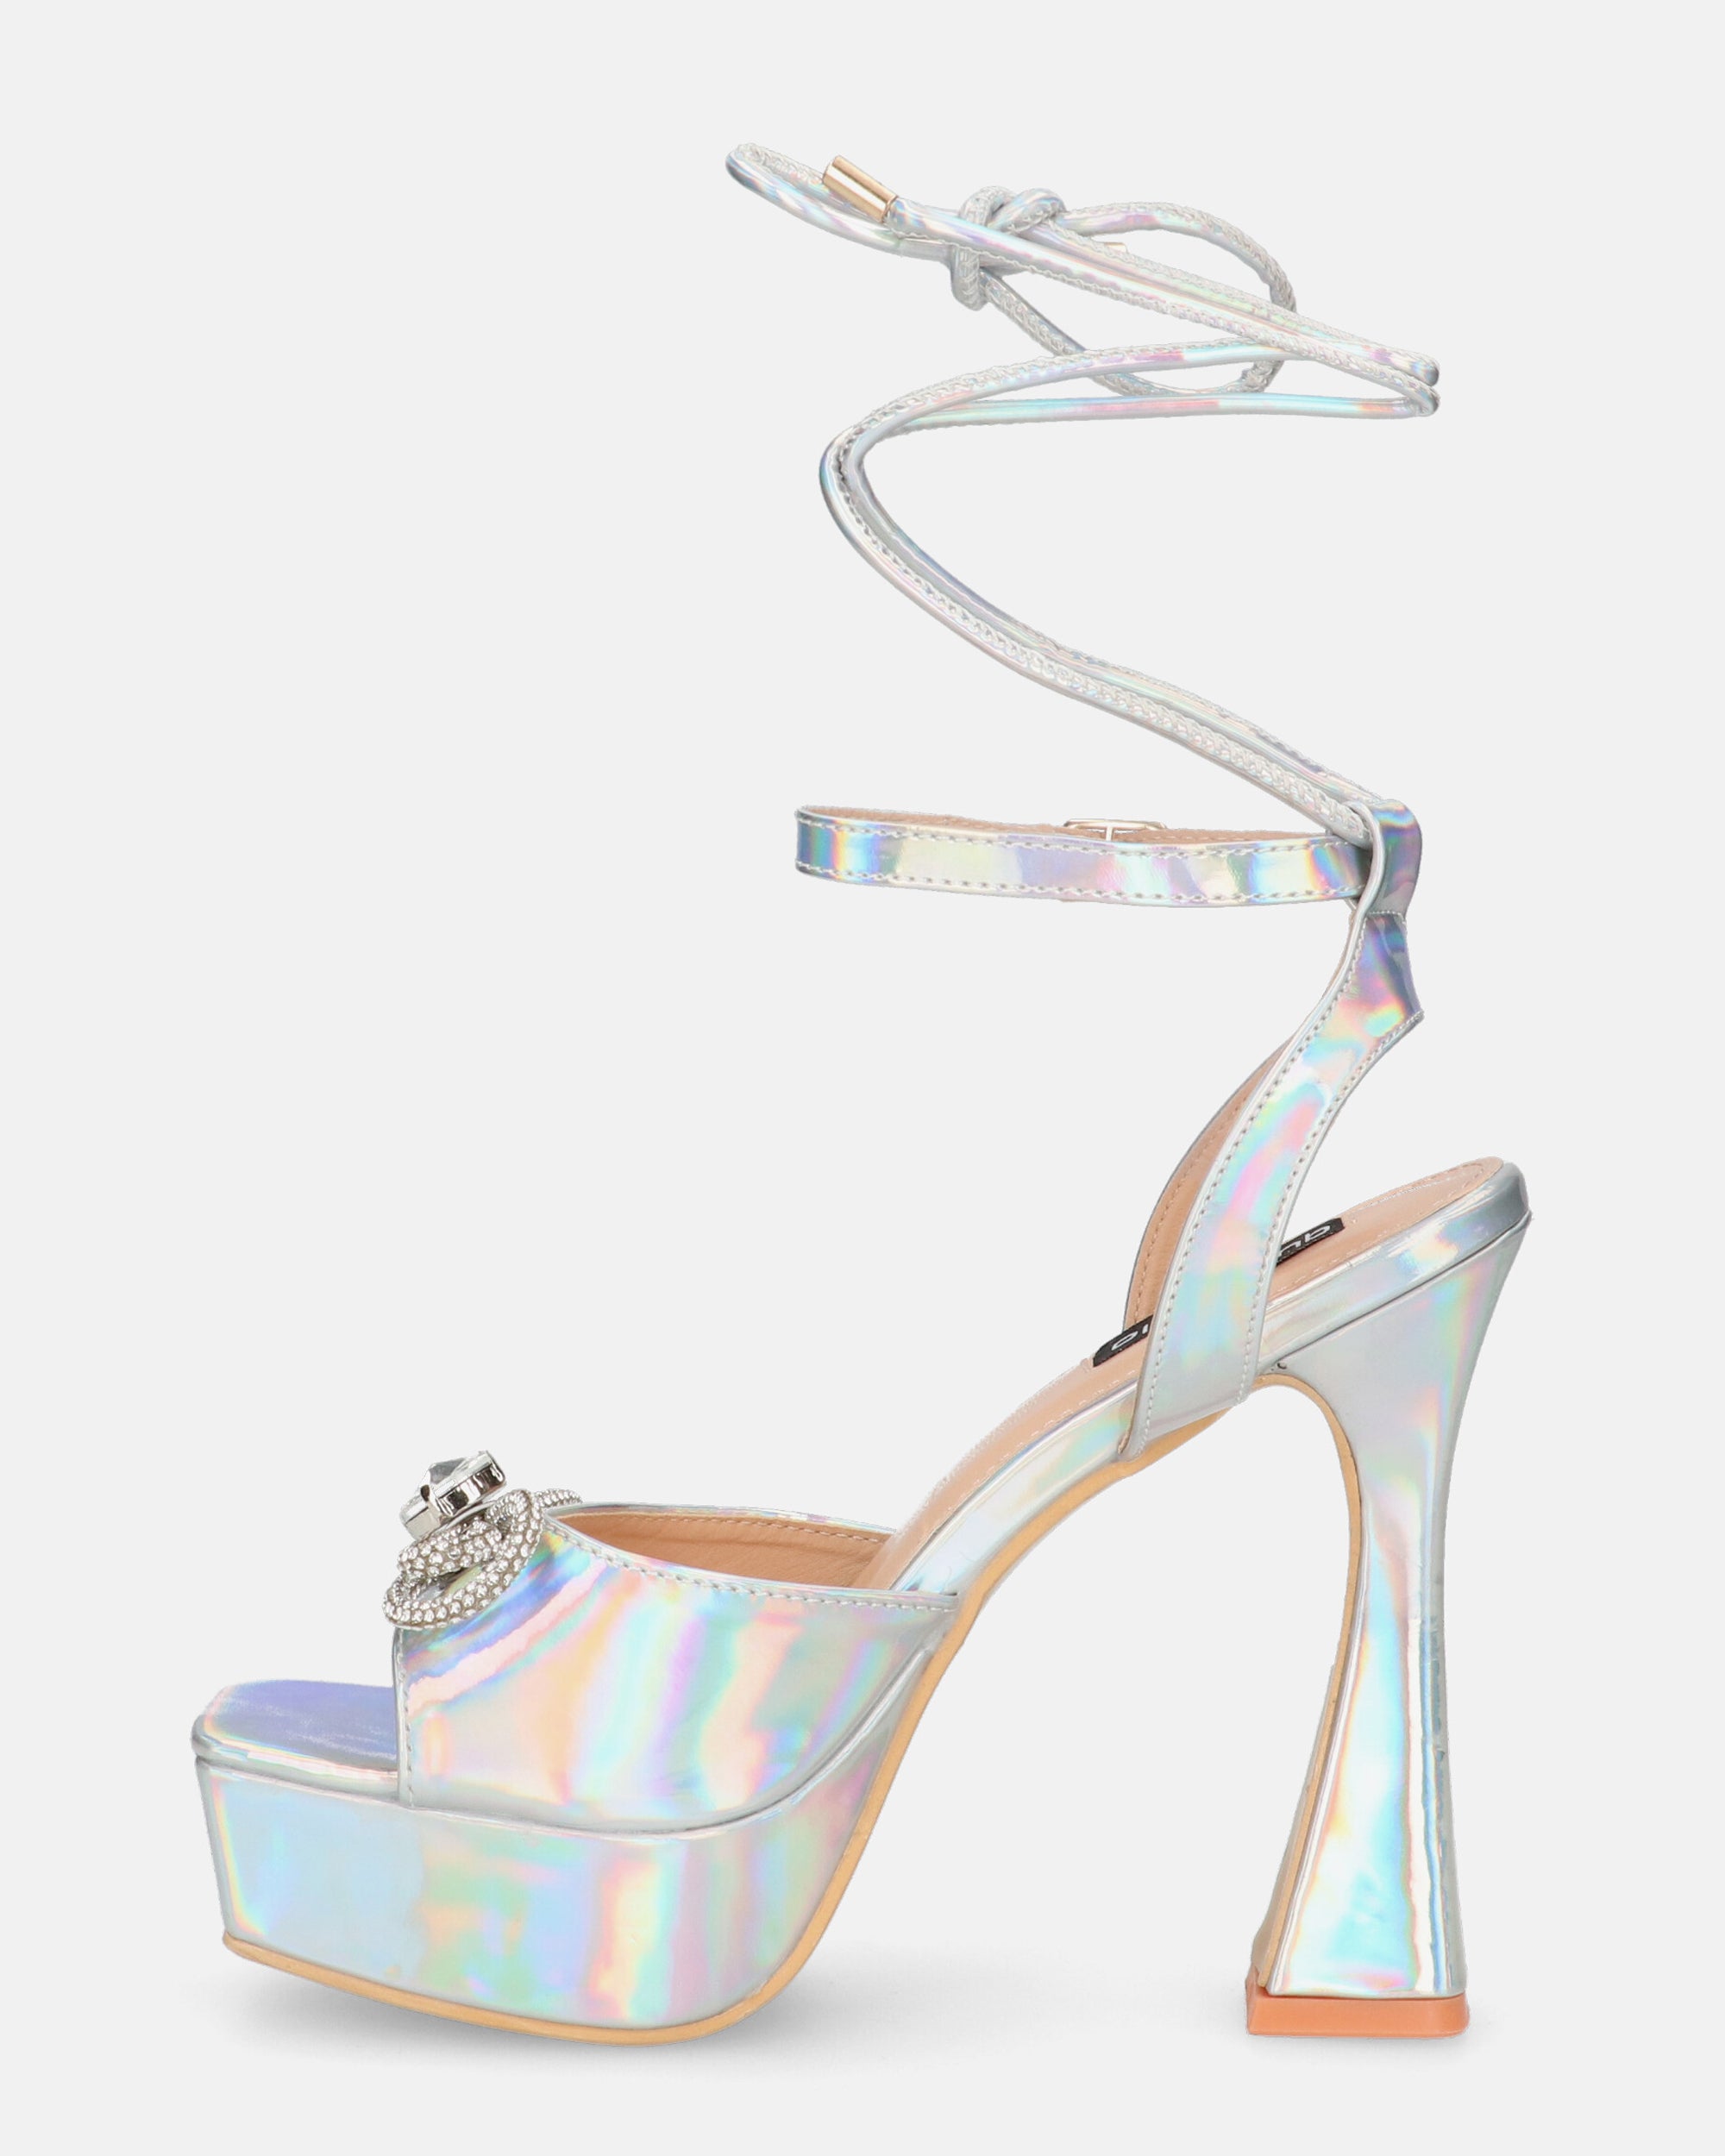 HOLLY - scarpe con tacco alto in glassy con effetto opalescente e gemme